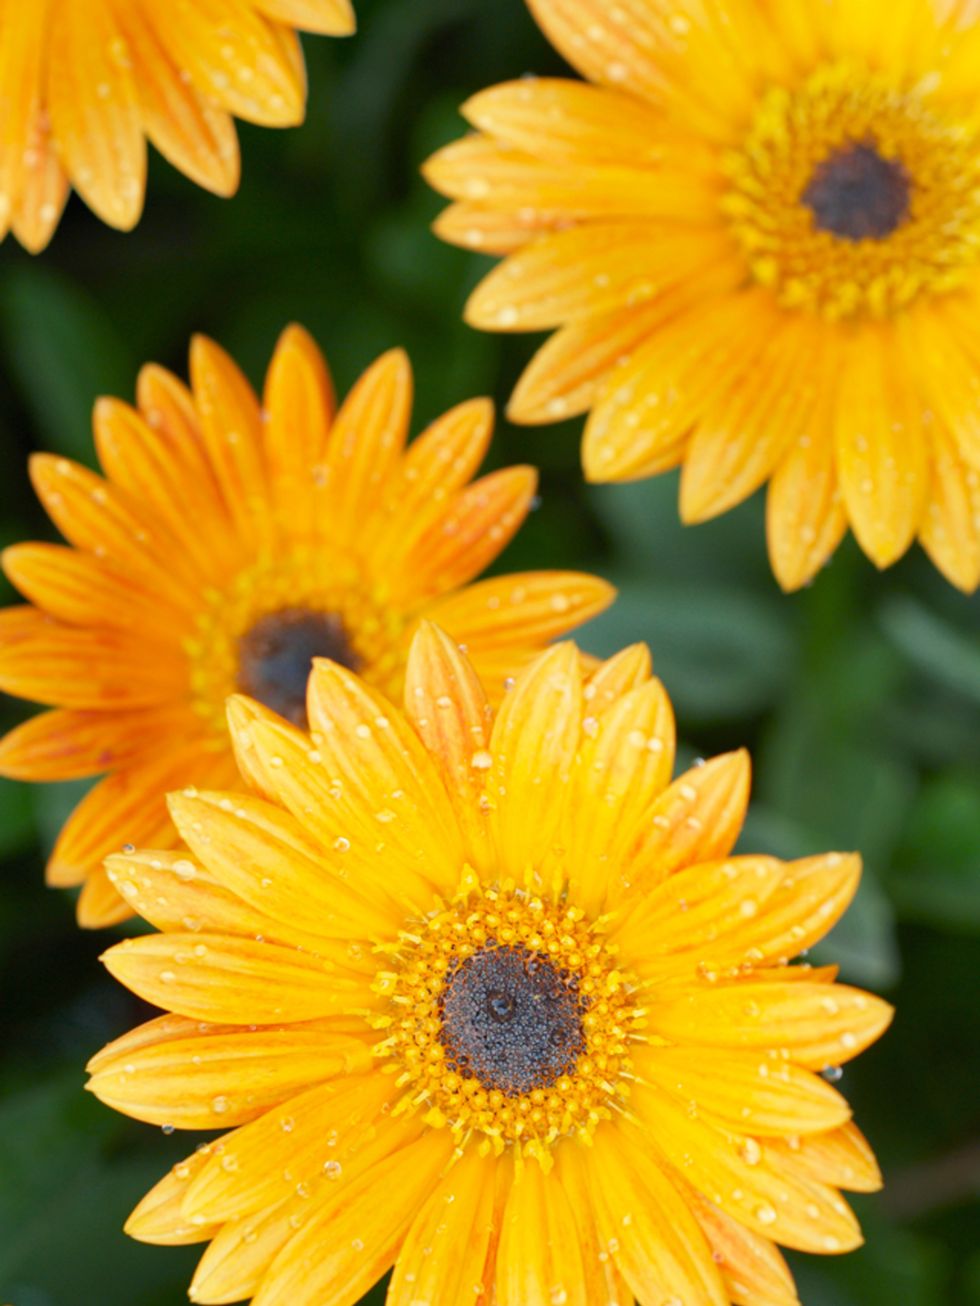 Yellow, Petal, Flower, Amber, Orange, Botany, Close-up, Flowering plant, Macro photography, Marguerite daisy, 